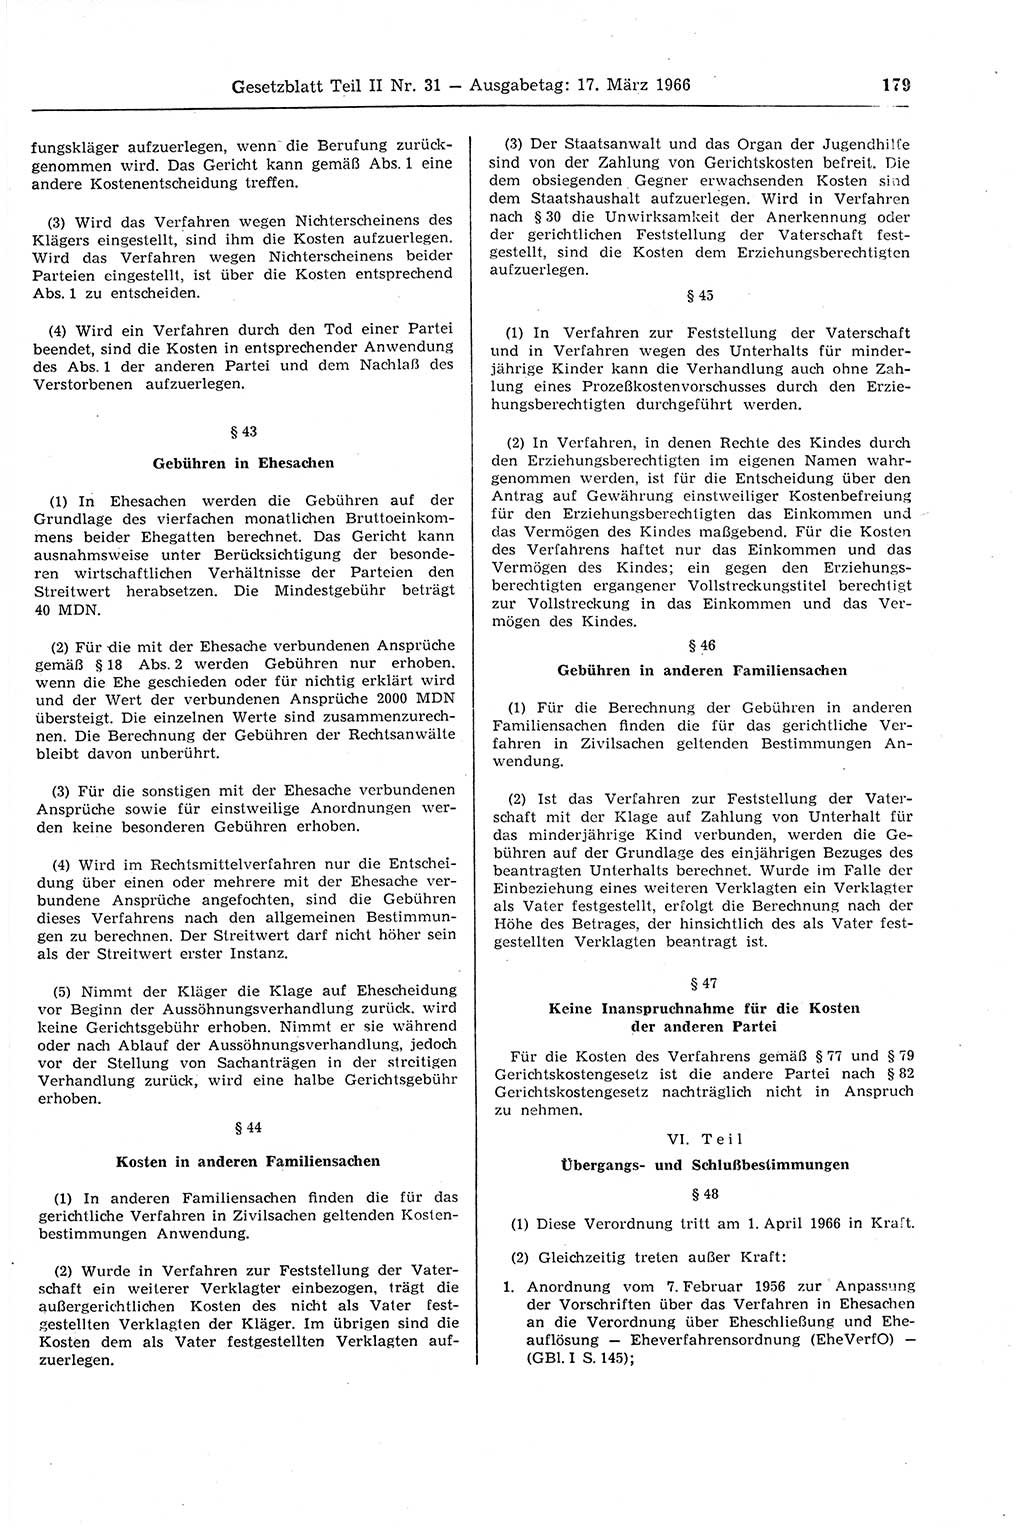 Gesetzblatt (GBl.) der Deutschen Demokratischen Republik (DDR) Teil ⅠⅠ 1966, Seite 179 (GBl. DDR ⅠⅠ 1966, S. 179)